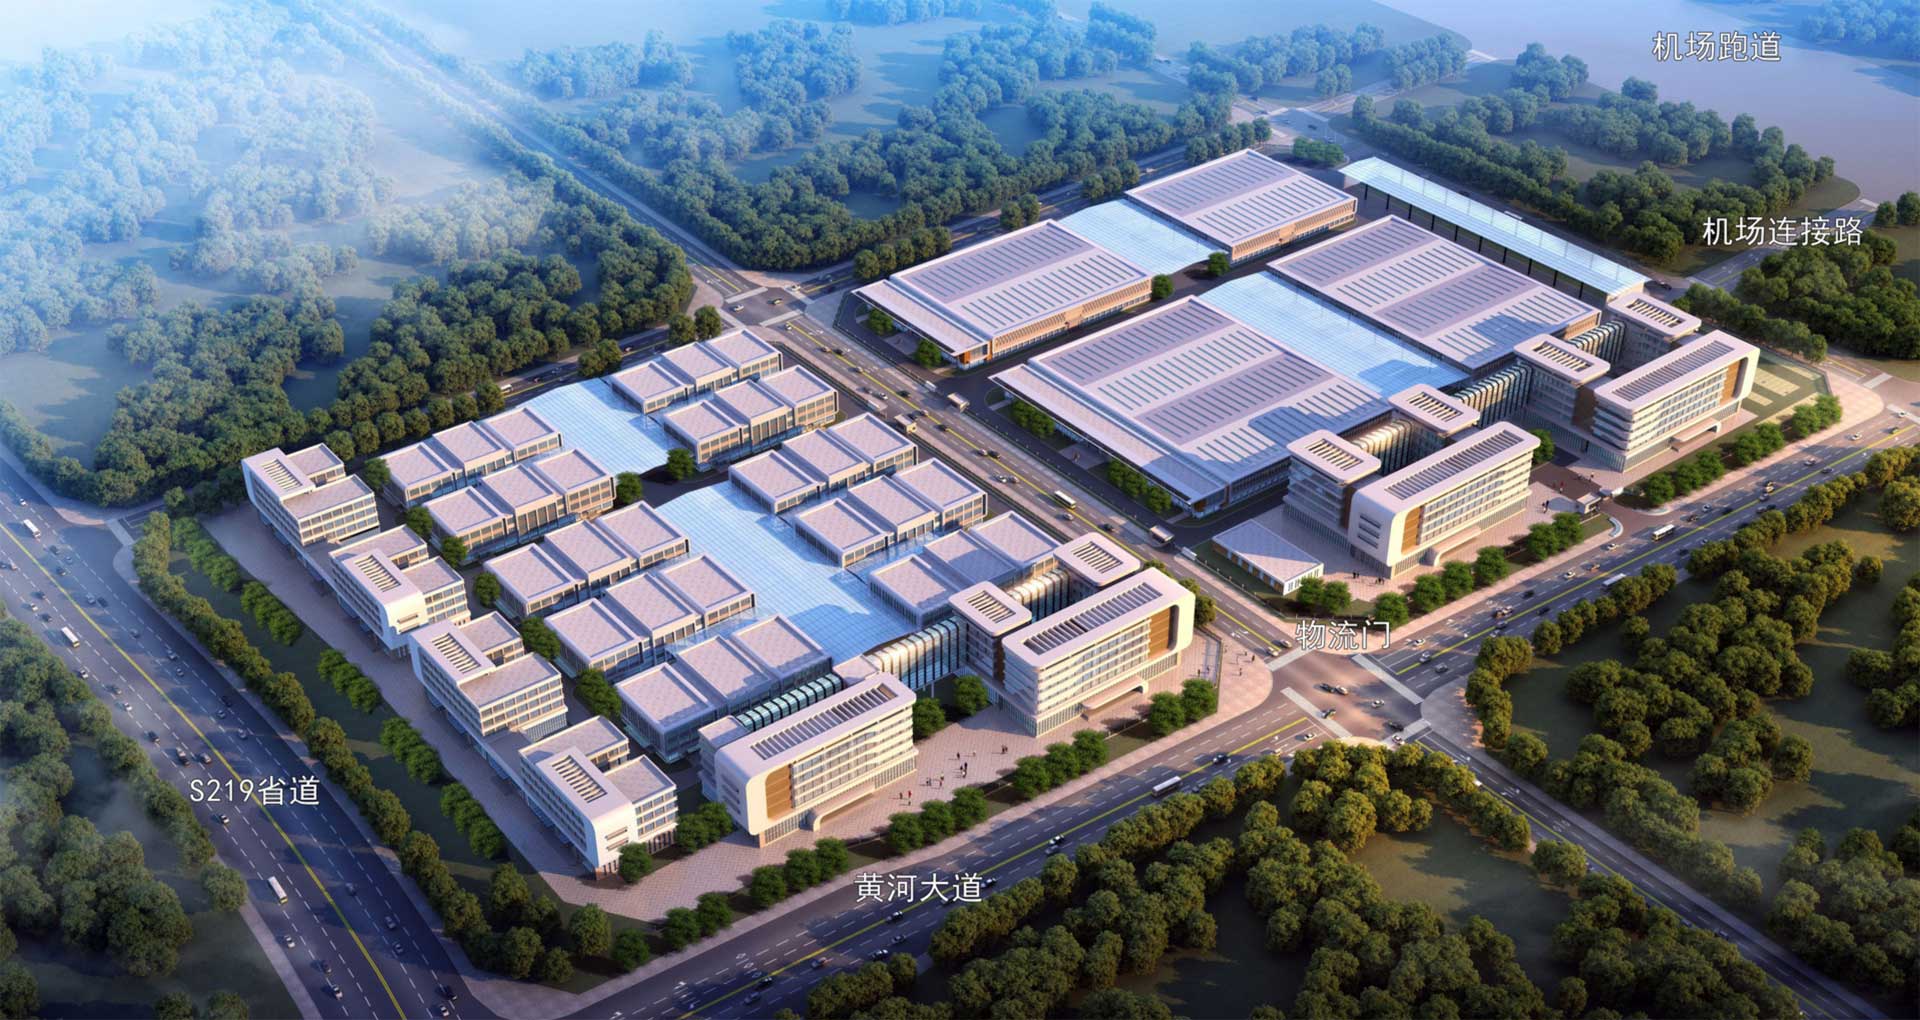 安阳东飞通航制造中心一期后续工程及通航产业研发孵化中心项目